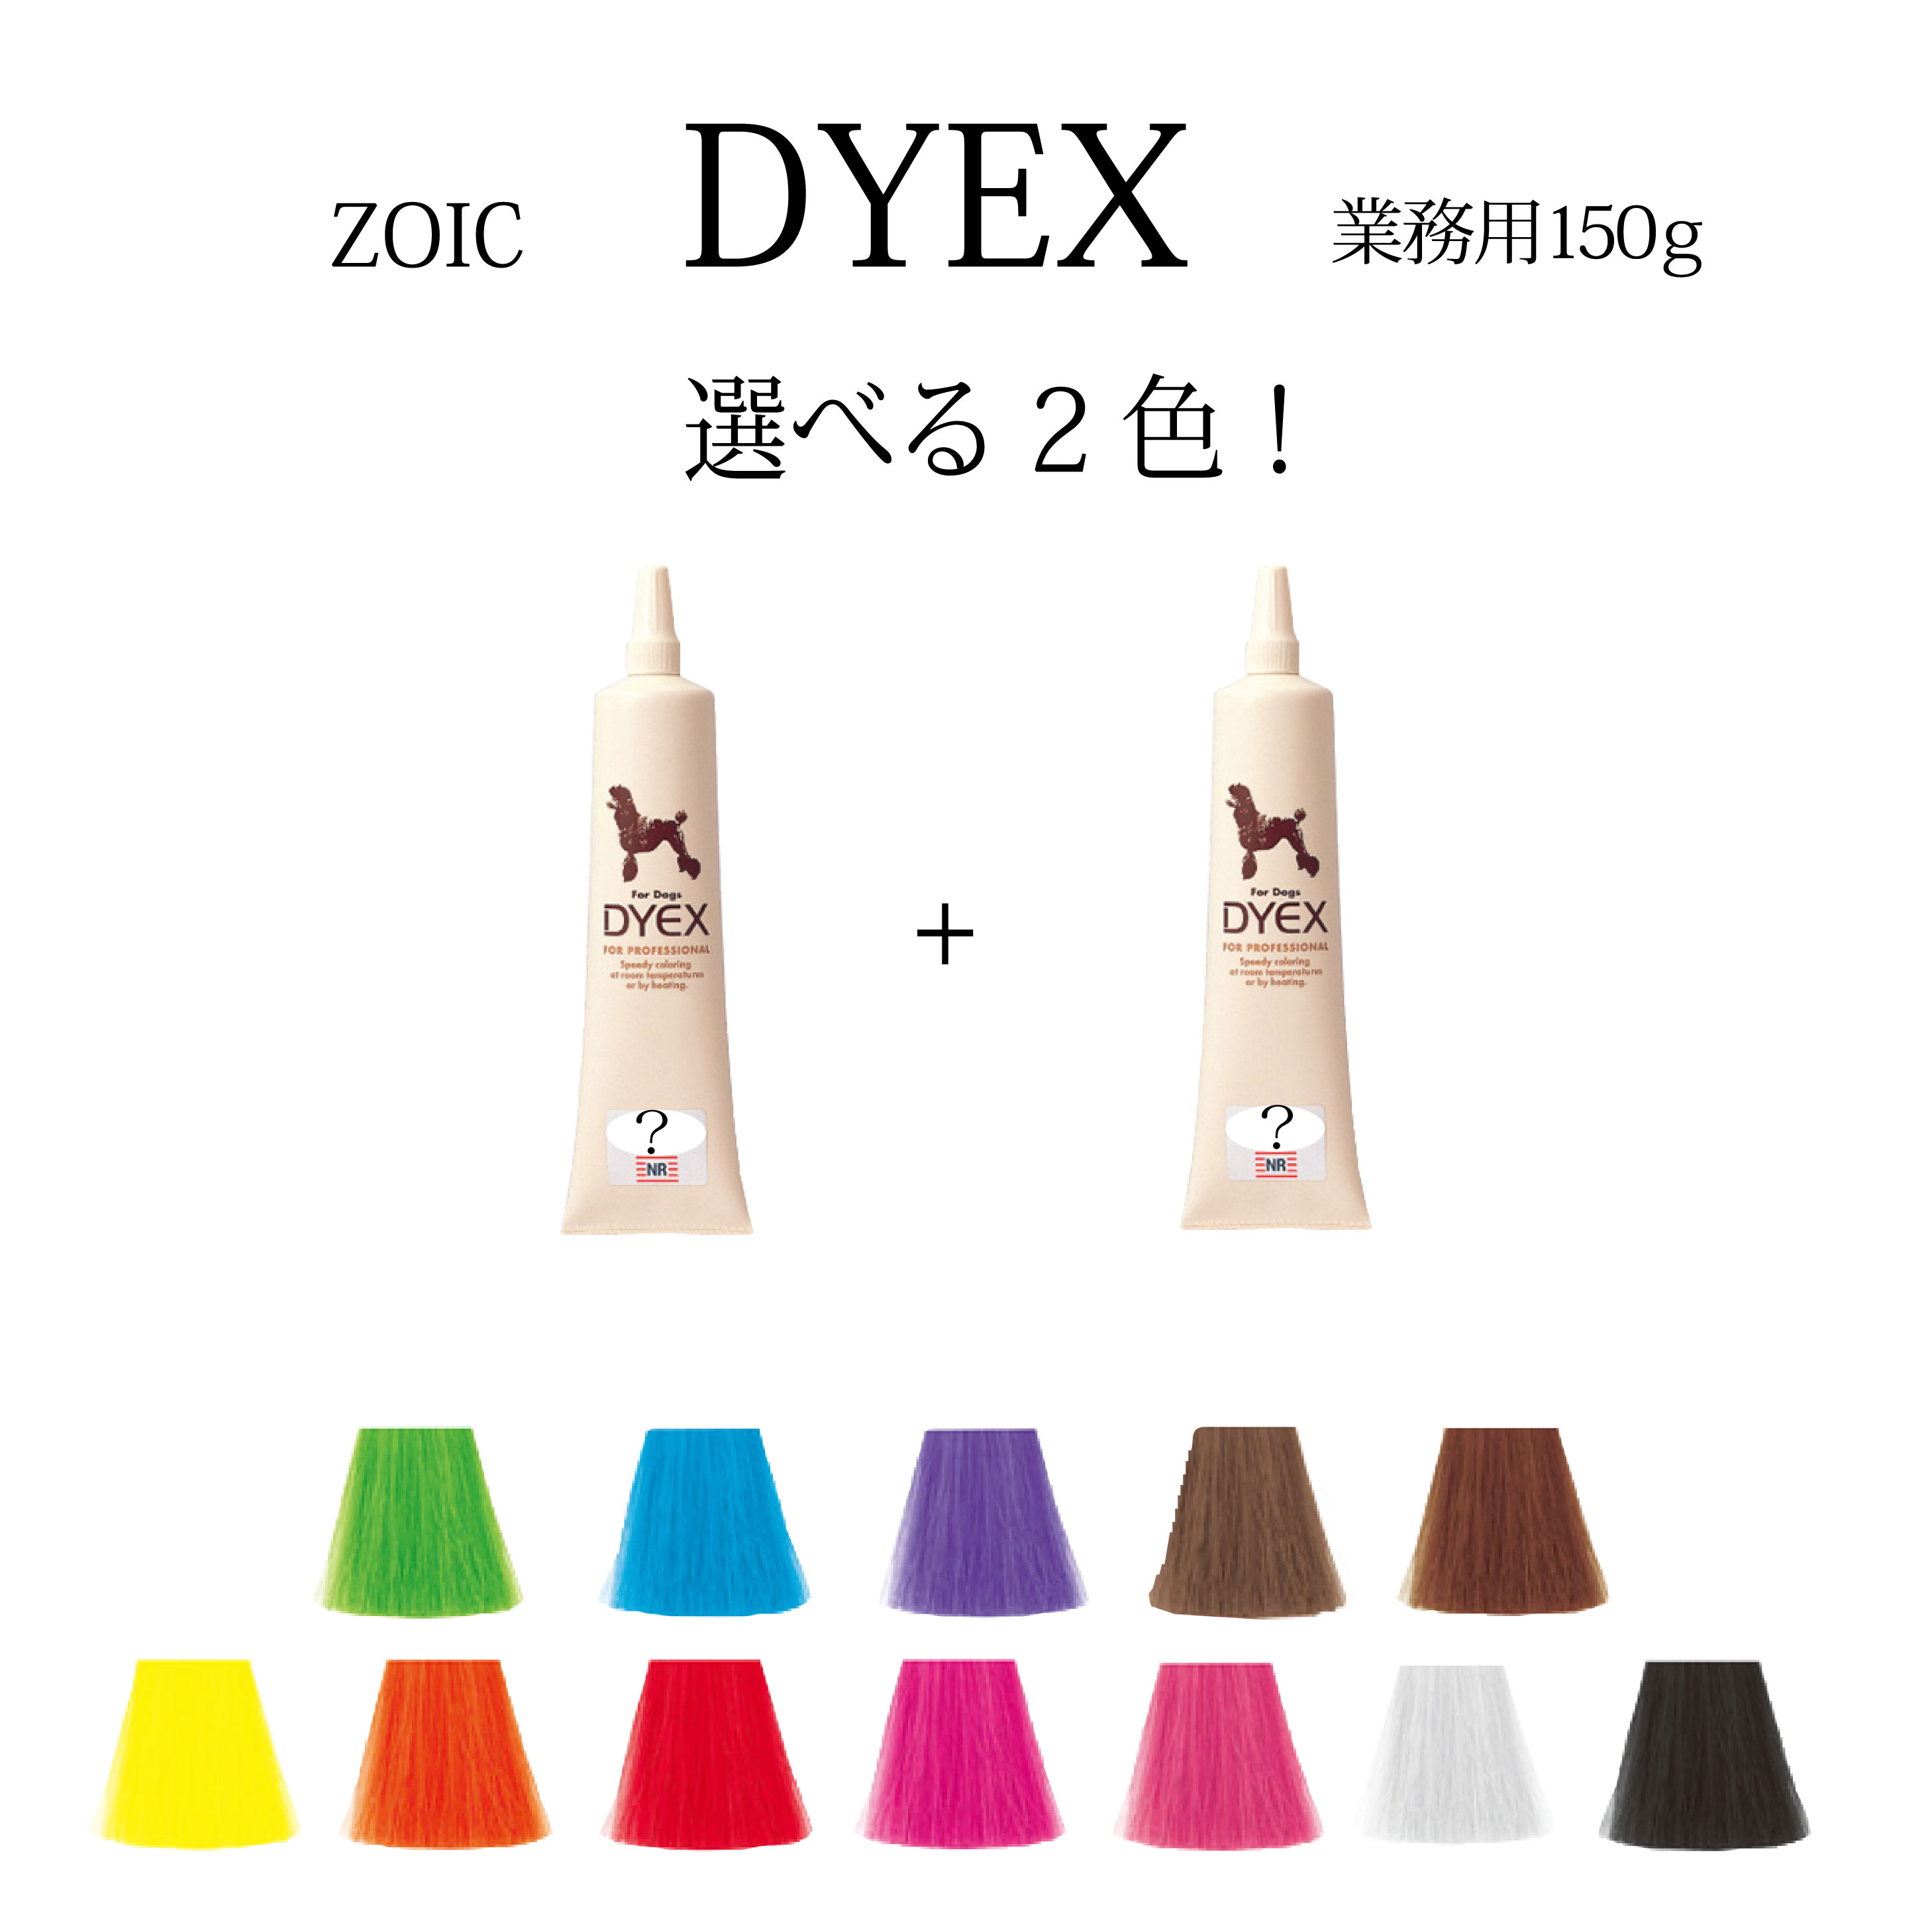 テレビで話題 毛染めペット用品トリマーペットサロン ゾイック ダイックス DYEX 選べる2色 ついに再販開始 150ｇペット用 カラーリング剤送料無料